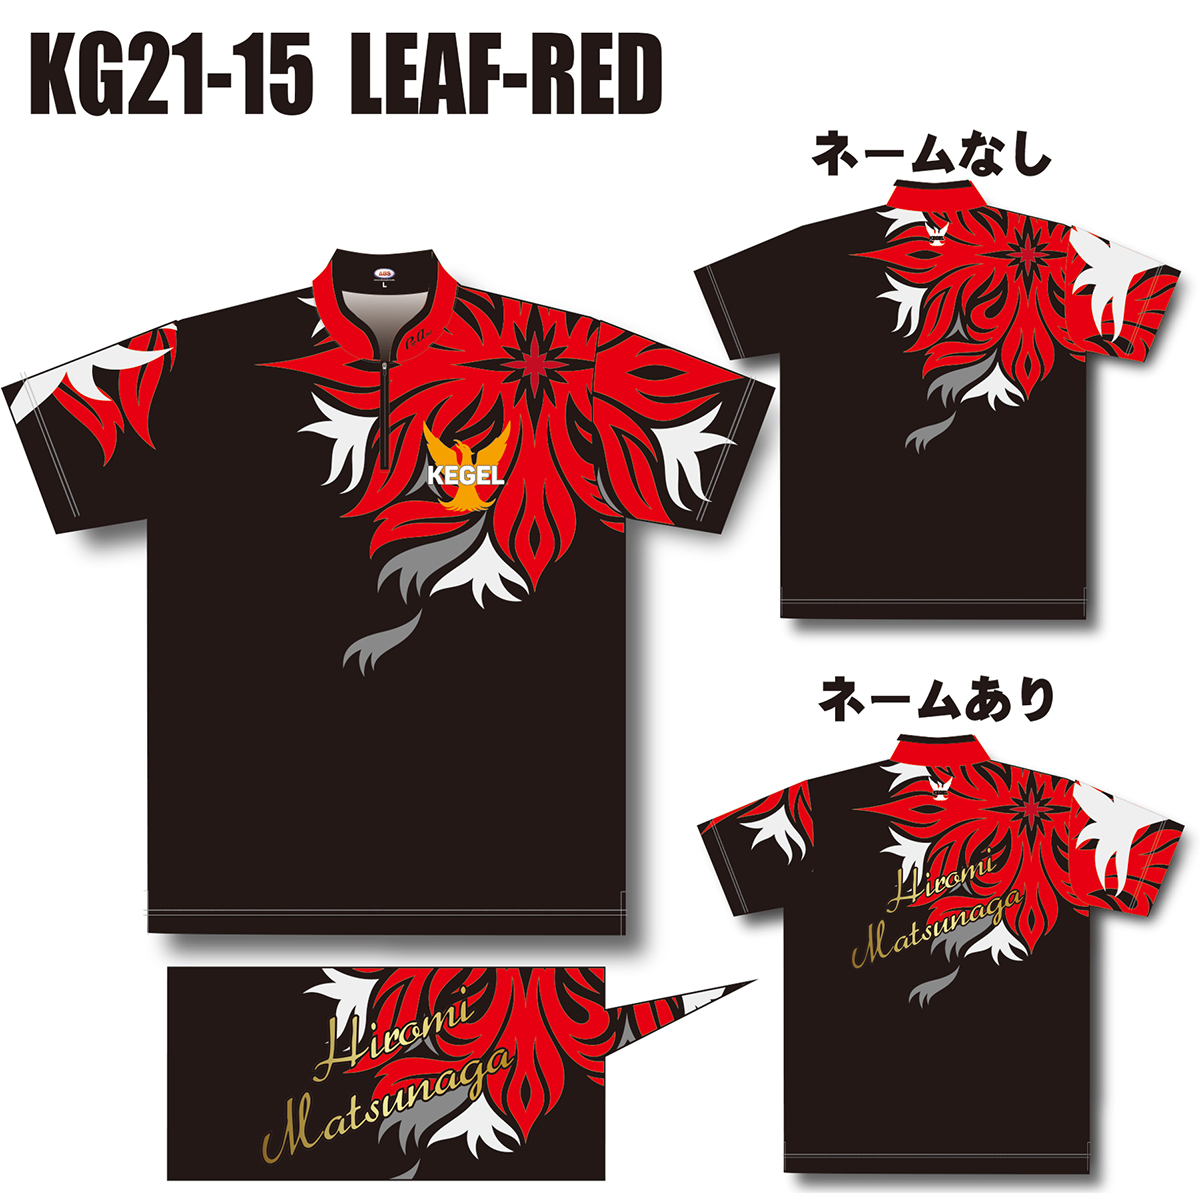 KEGEL KG21-15(LEAF-RED)